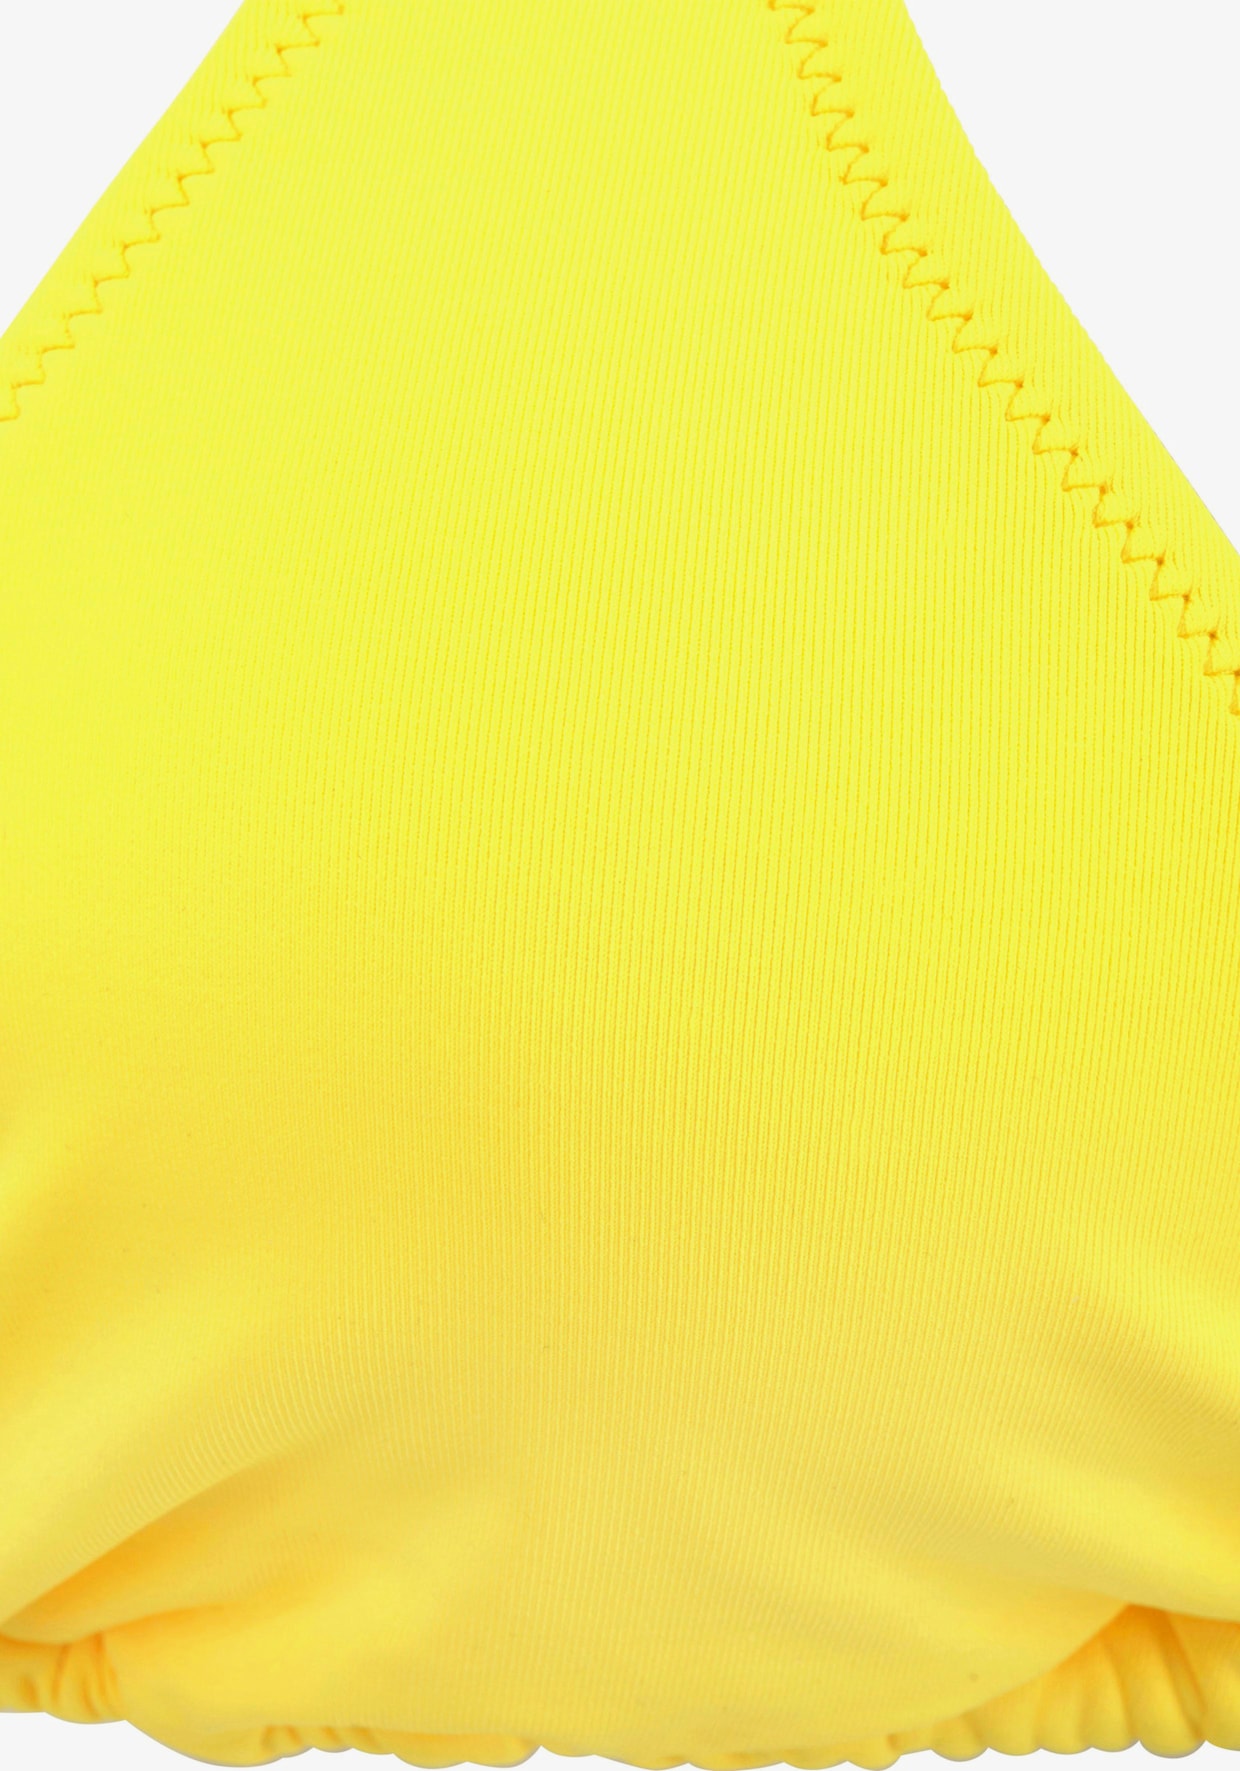 Buffalo Triangel-Bikini-Top - gelb